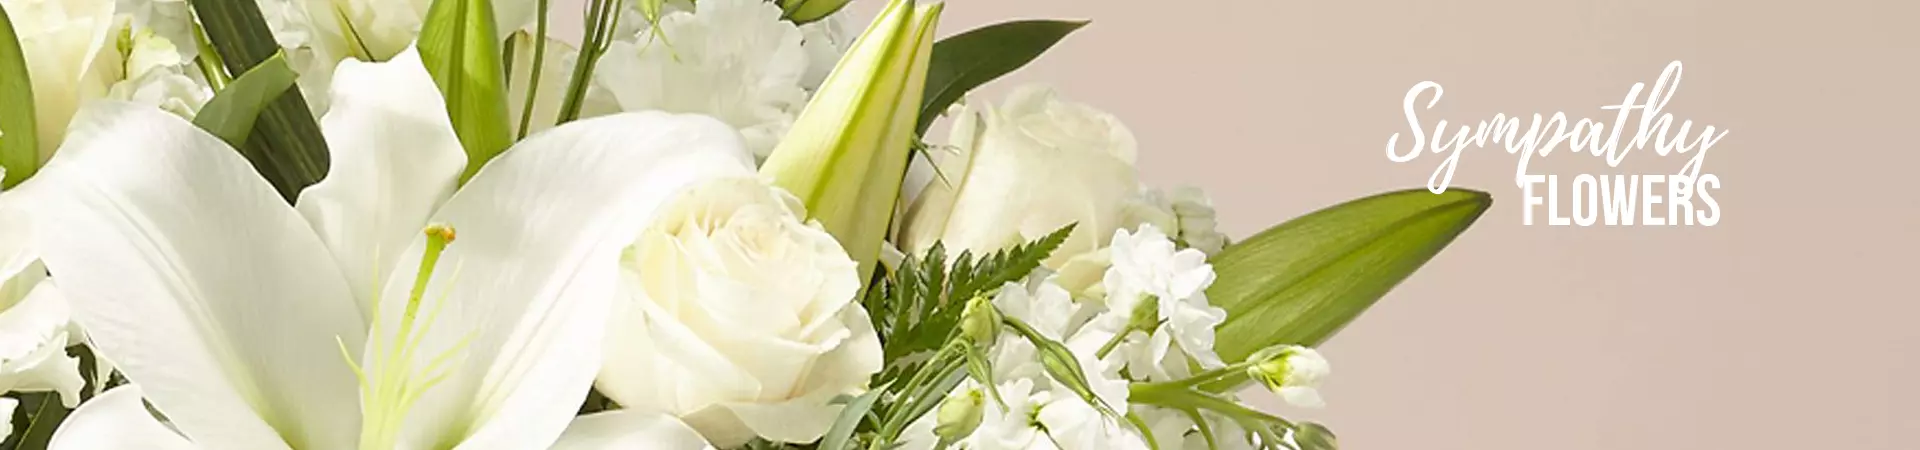 Colección de Symphaty Flowers, Funeral, Condolencias, Fresh Flowers Orlando